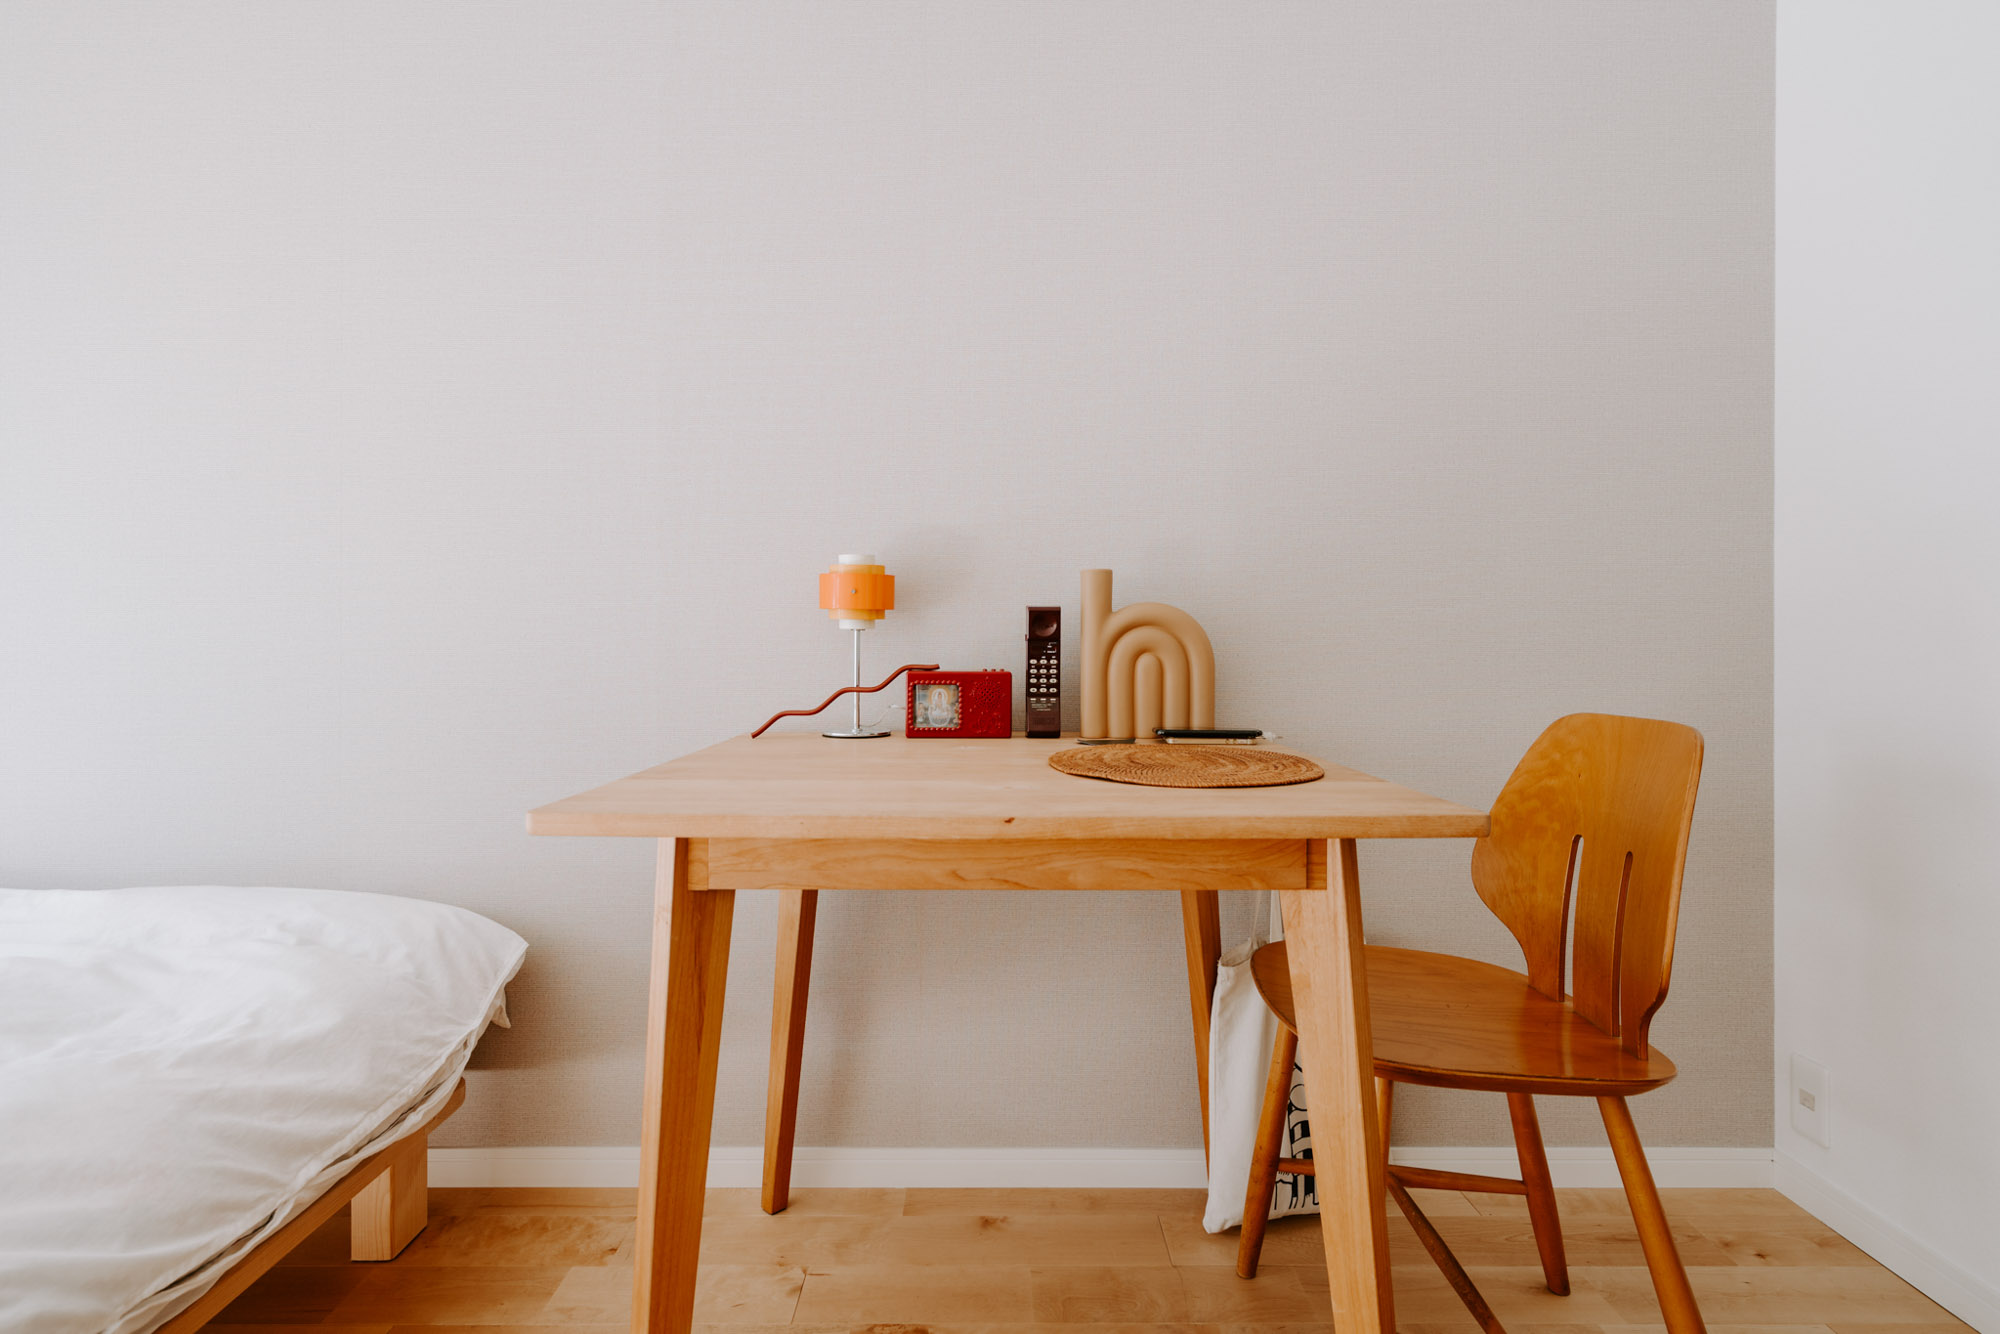 こちらのお部屋の、一人暮らしのお部屋にもちょうどいいサイズのダイニングテーブルは momo naturalのもの。シンプルで飽きの来ないデザインは、長く使い続けていくことのできる家具になるでしょう。